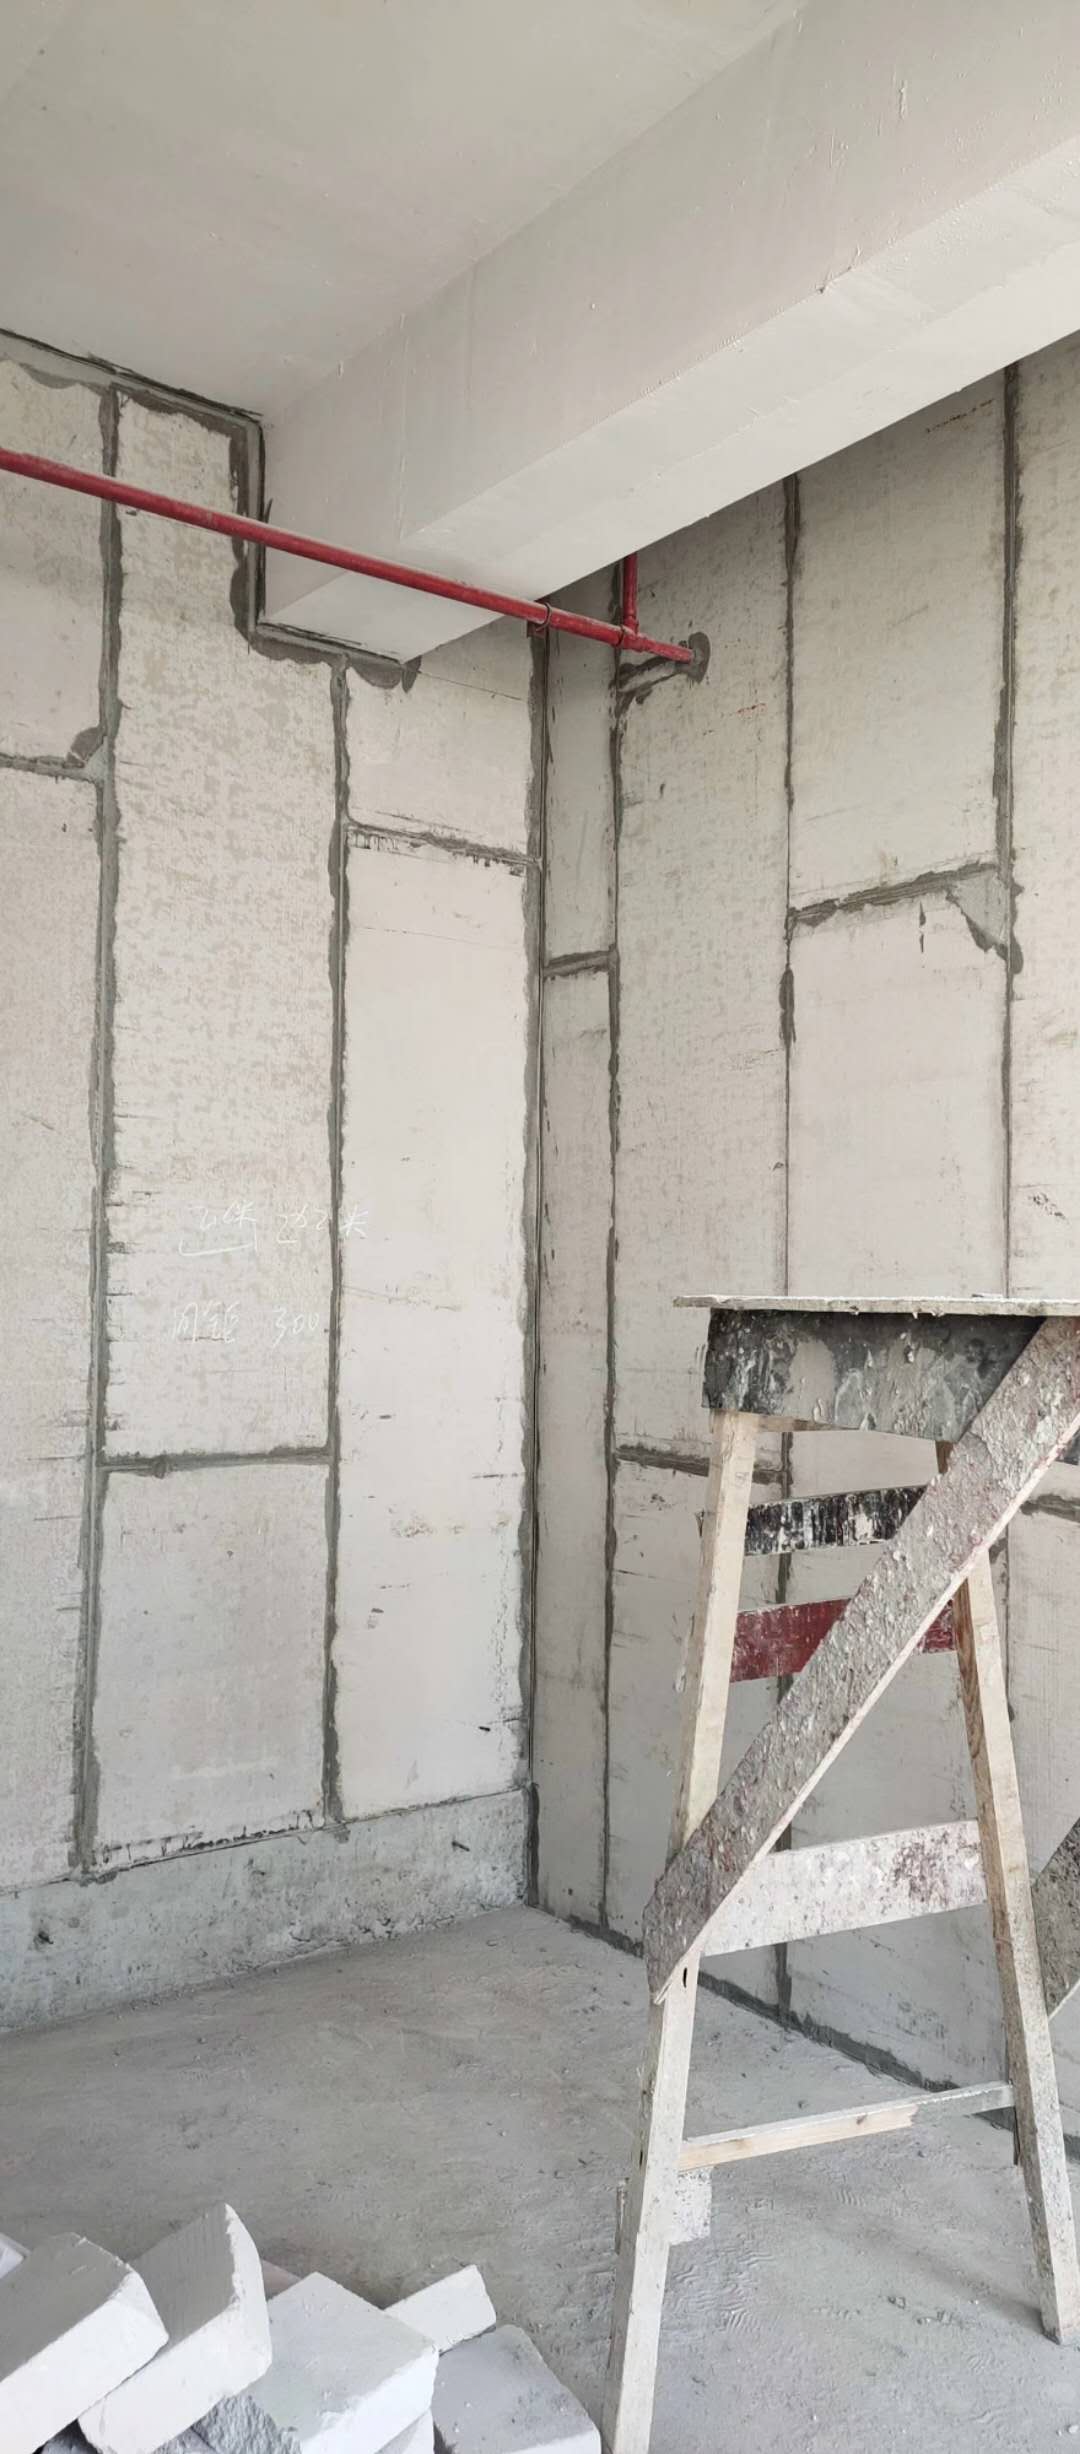 上海硅酸钙板 江苏硅酸钙板 江苏轻质复合墙板 上海轻质复合墙板 安徽轻质复合墙板